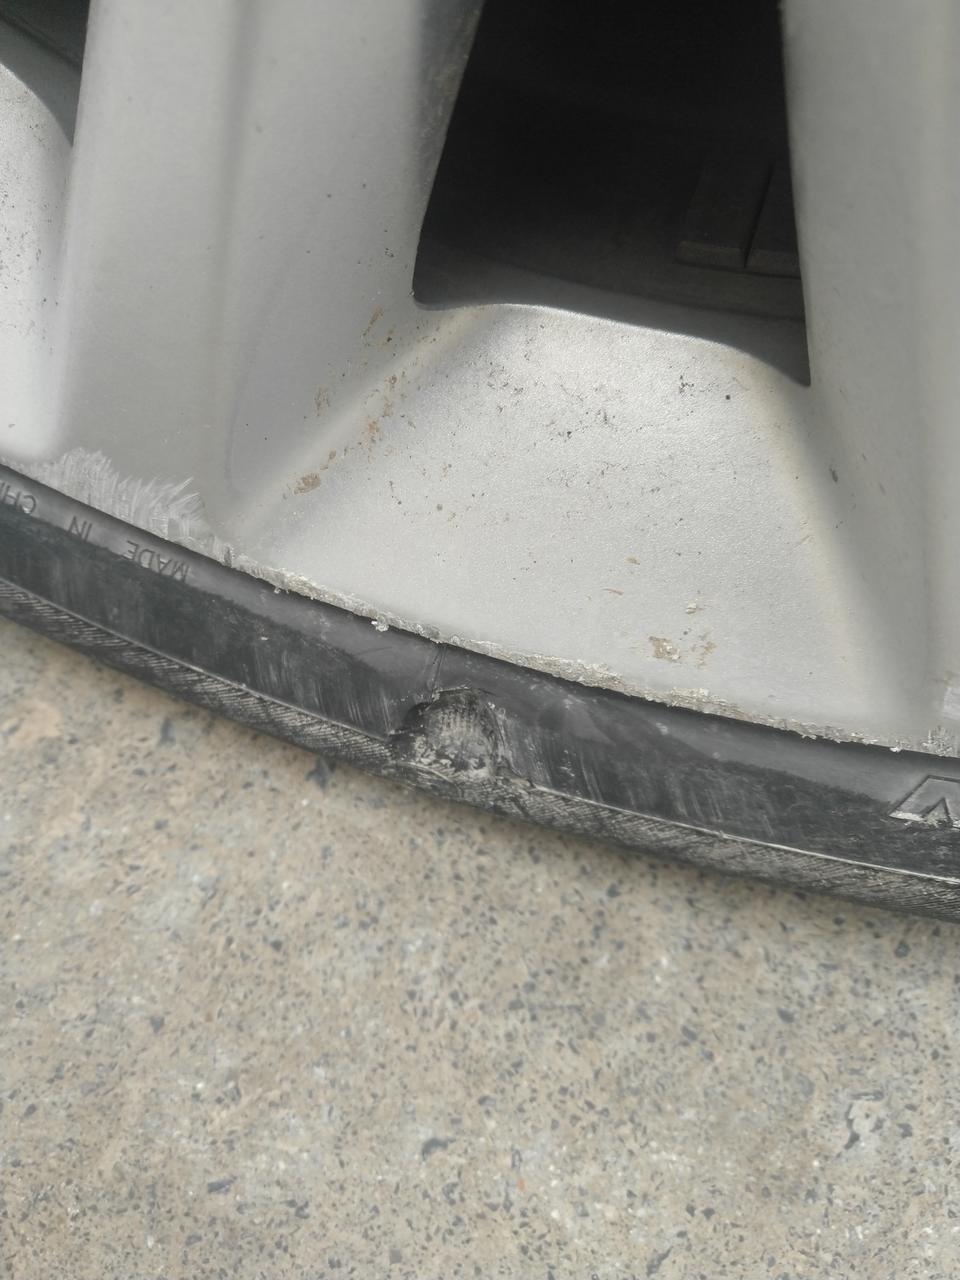 威朗胎壁烂了一块需要换轮胎吗 修修有用吗 换轮胎的说可以修